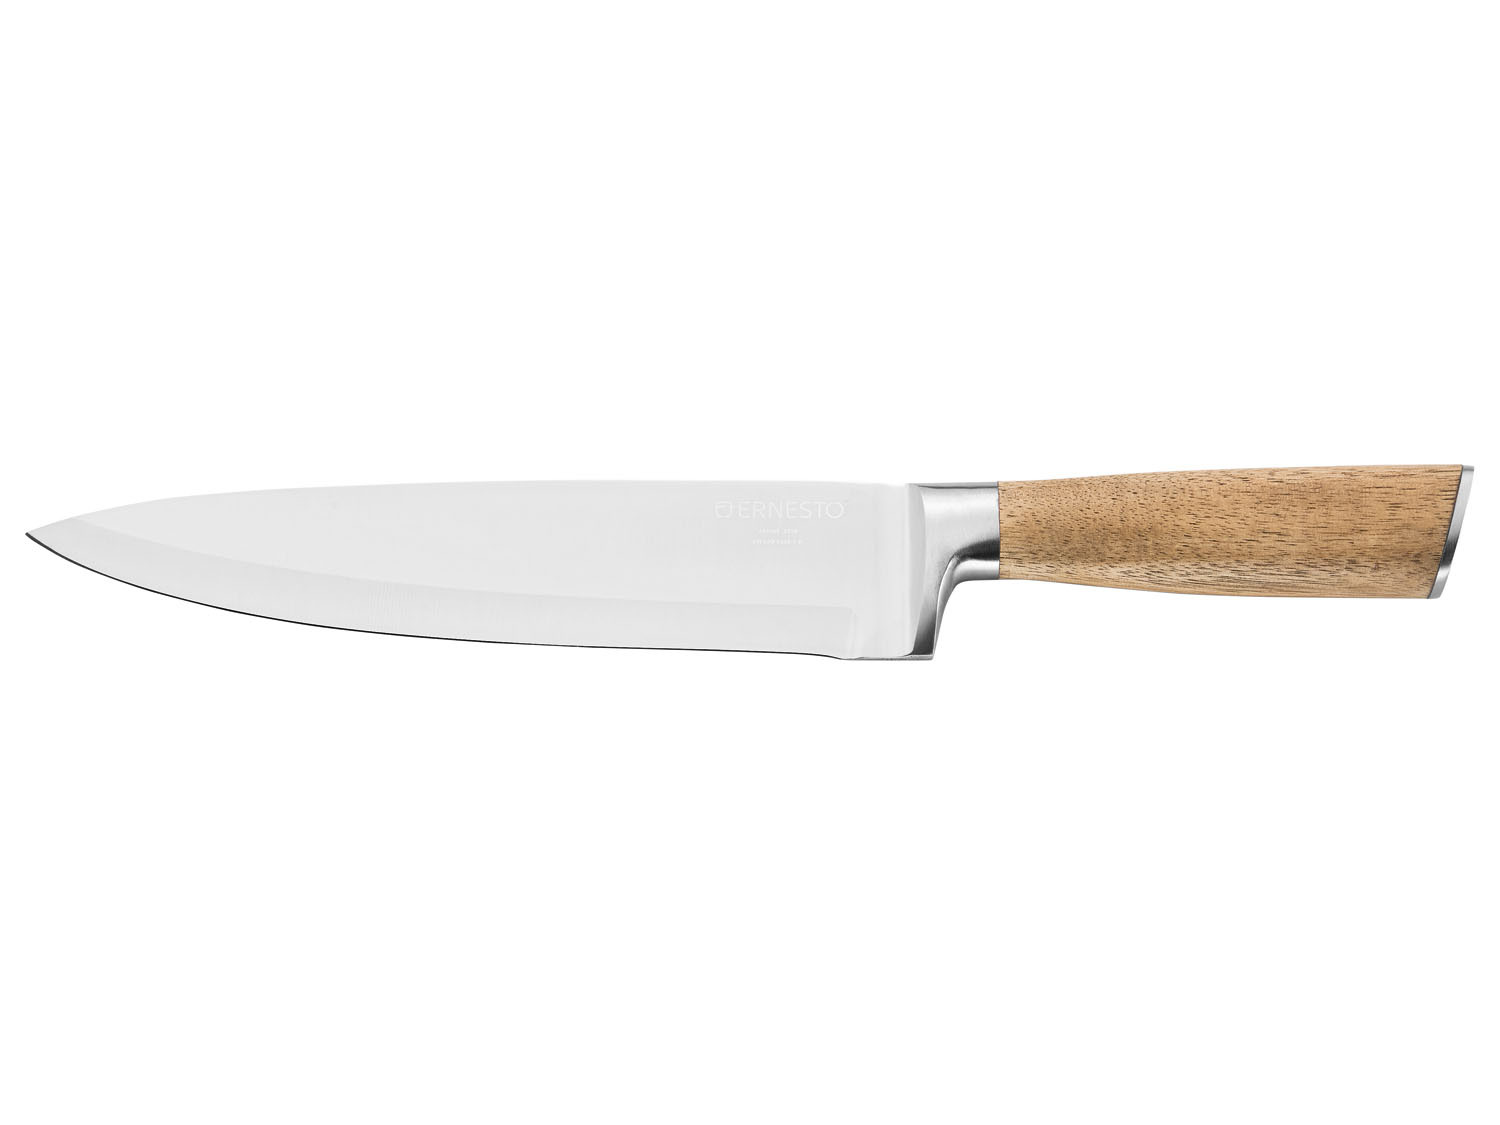 ERNESTO® Kochmesser / Santoku-Messer / Hackmesser | Küchenmesser